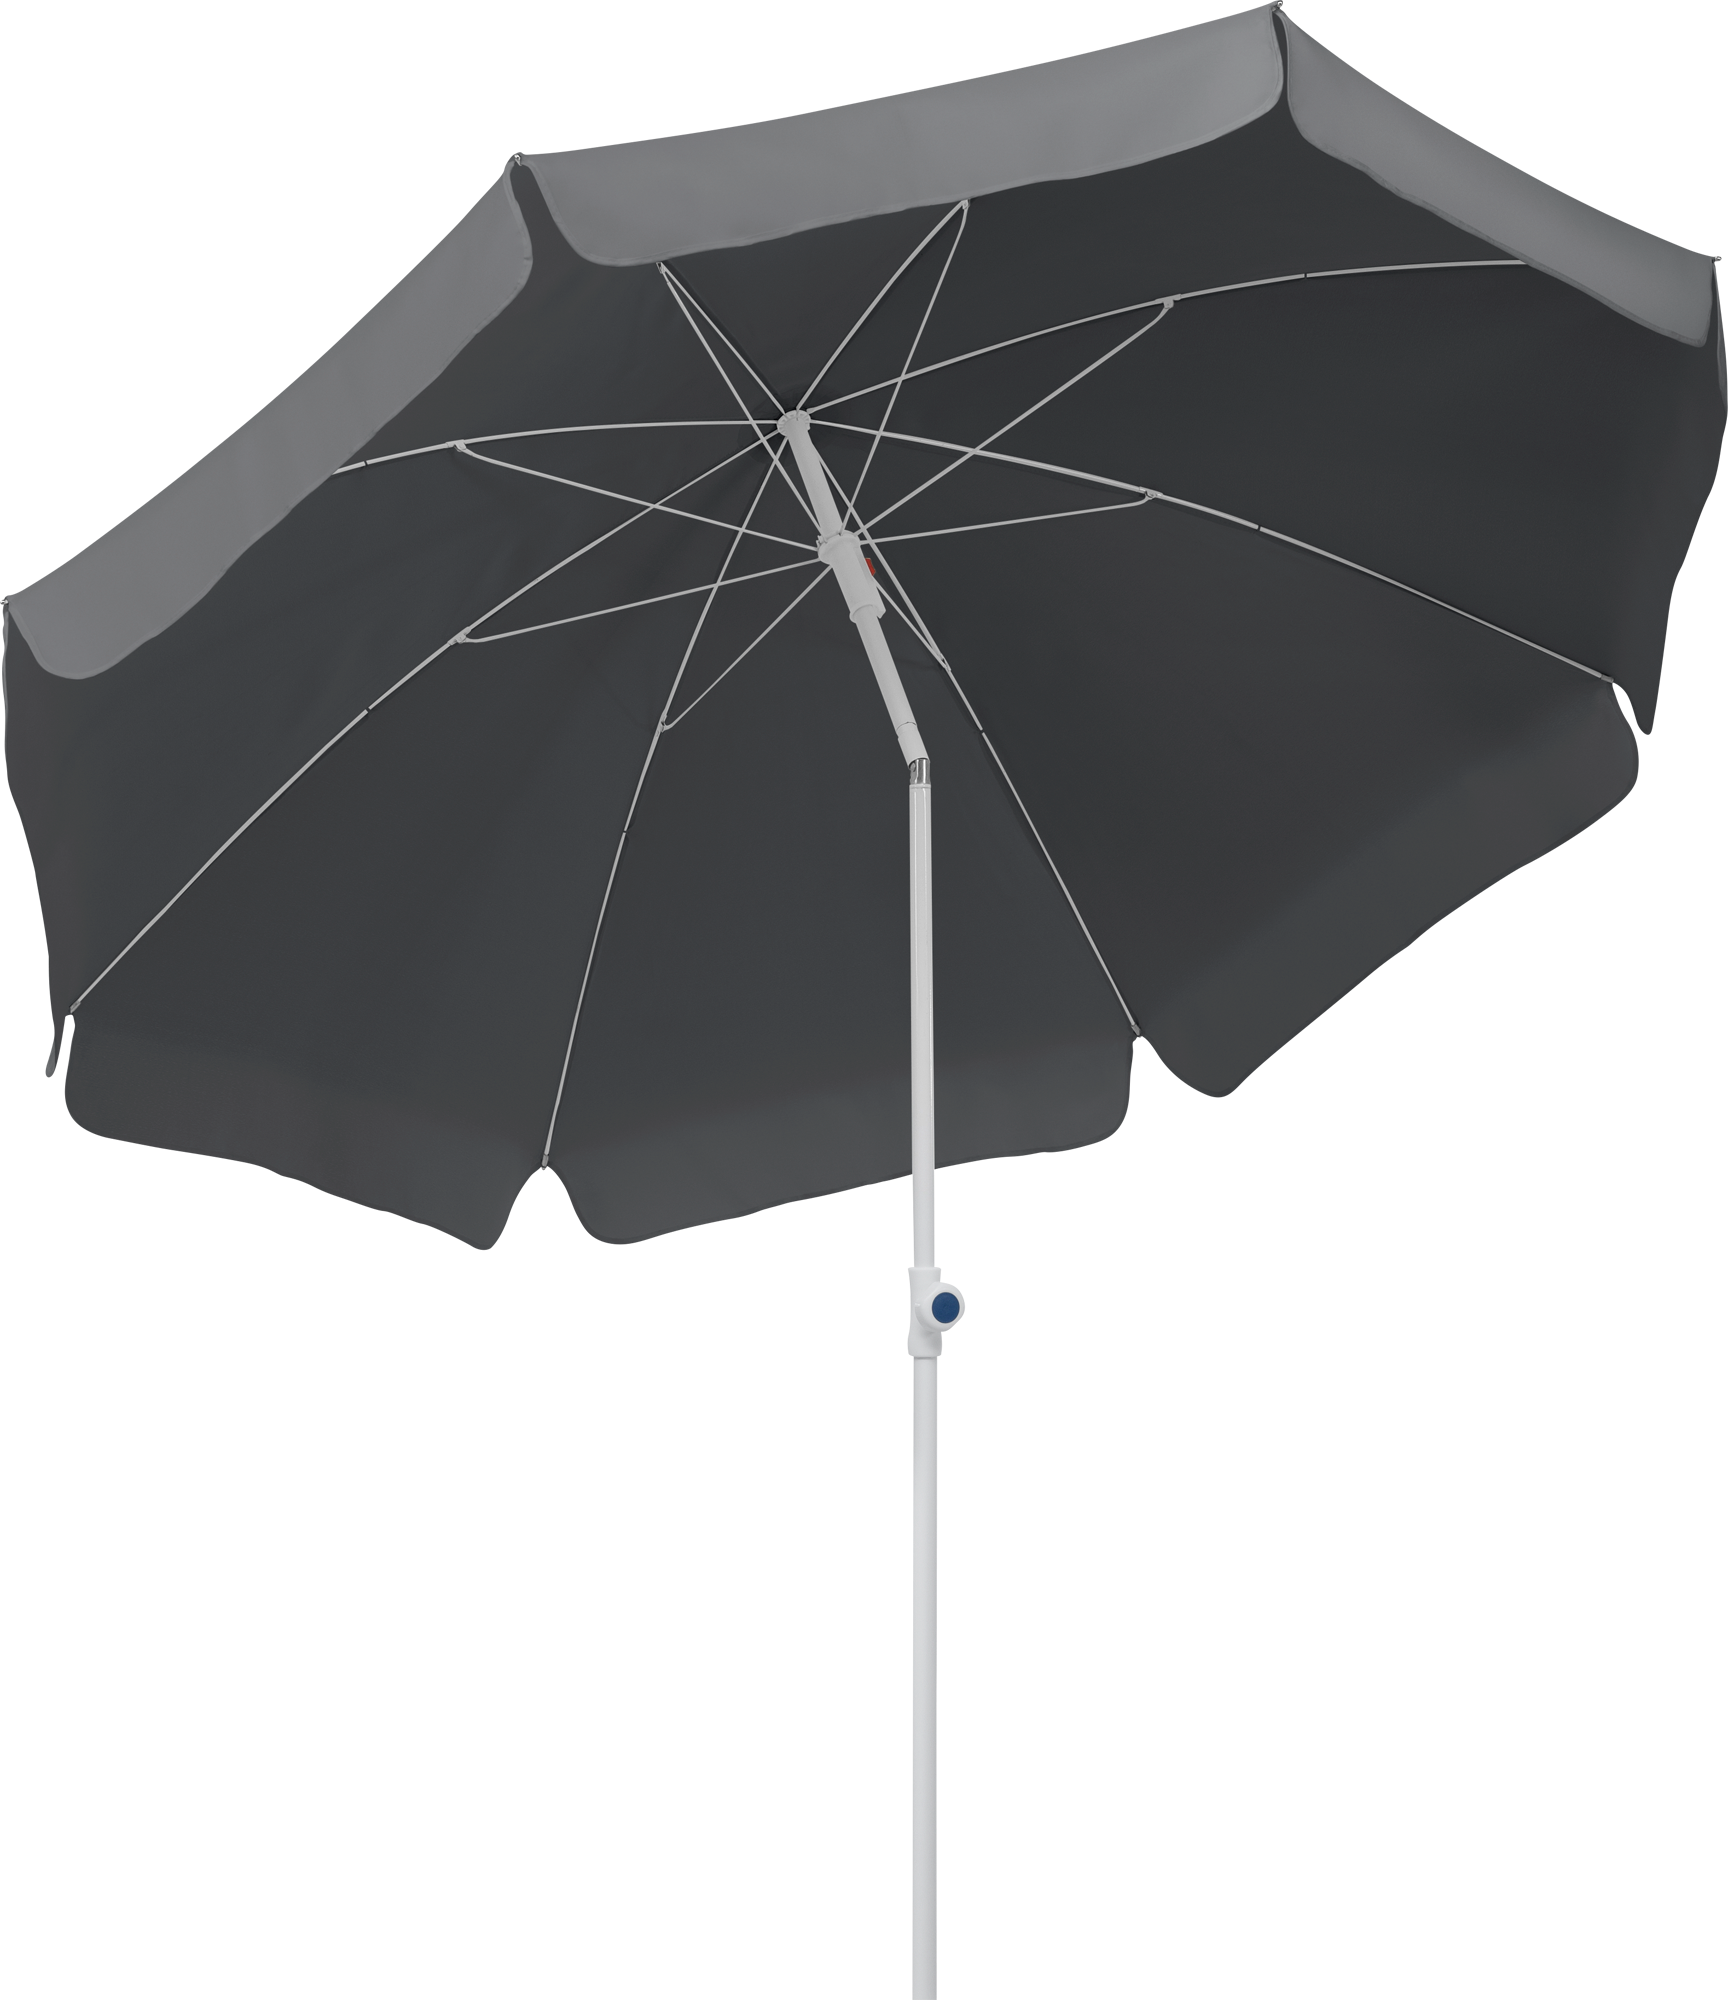 Schneider Schirme Sonnenschirm Ibiza 240 cm rund anthrazit